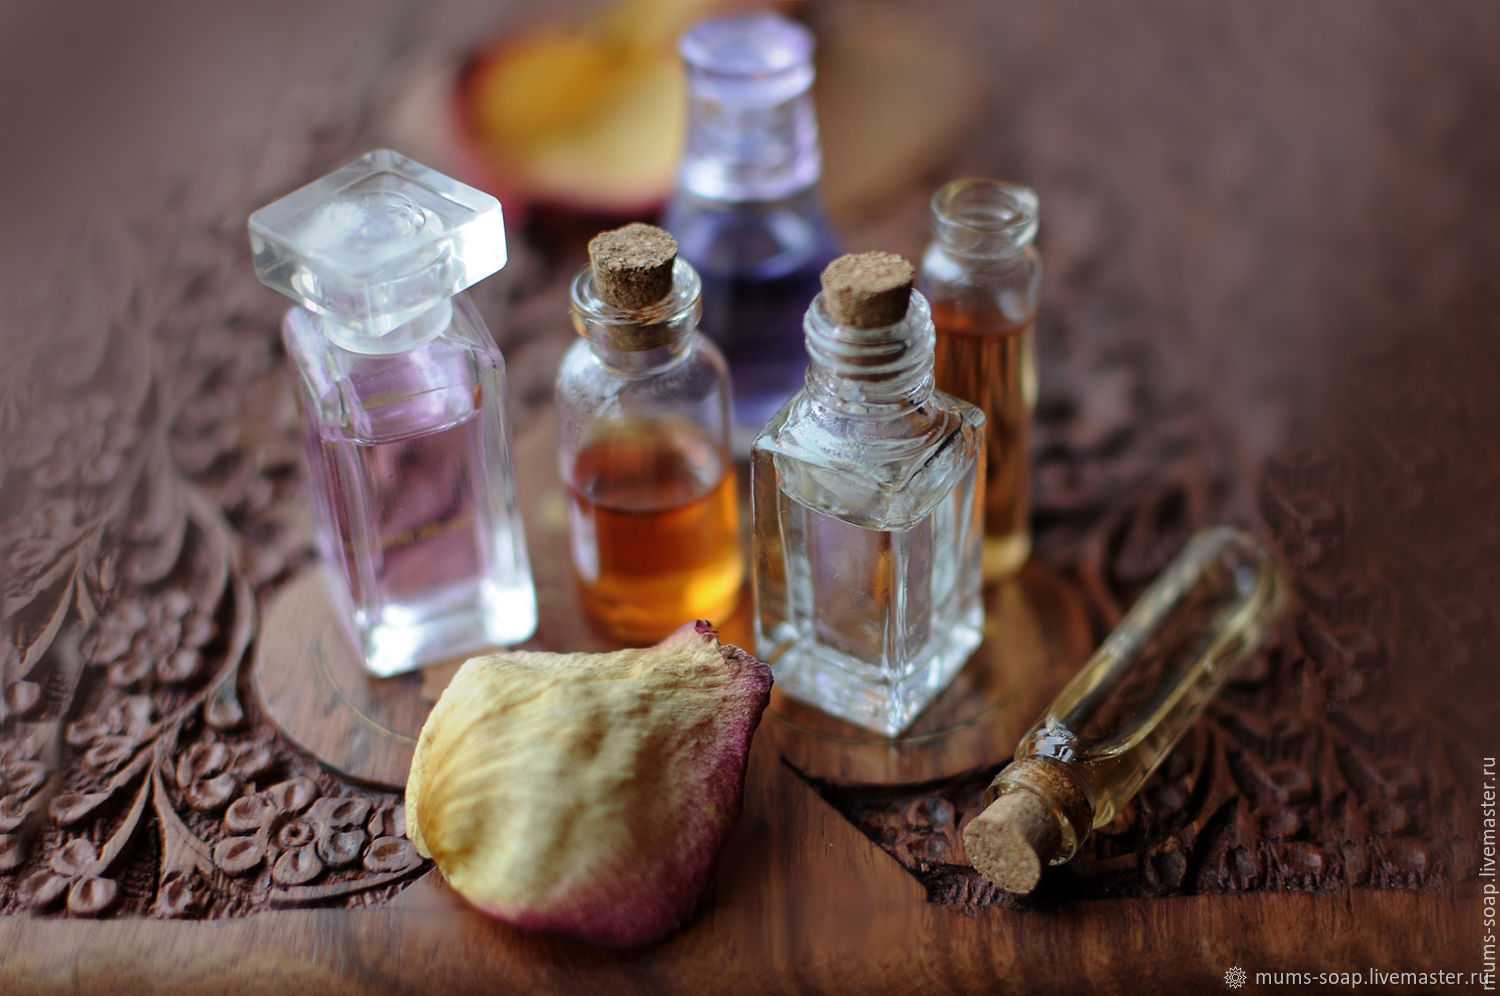 Полное руководство по выбору аромата и покупке духов